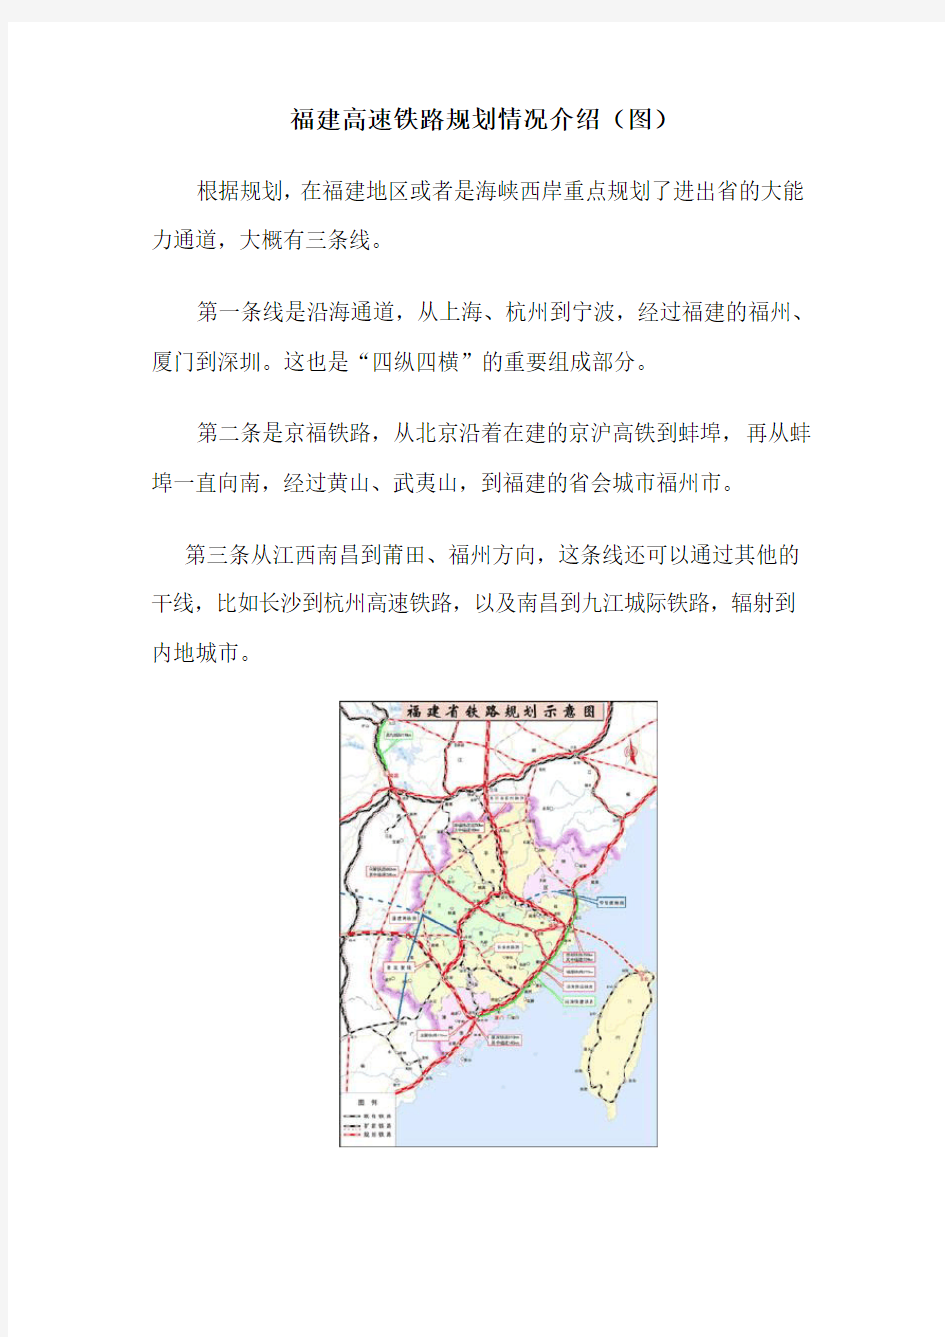 福建高速铁路规划情况介绍(图)